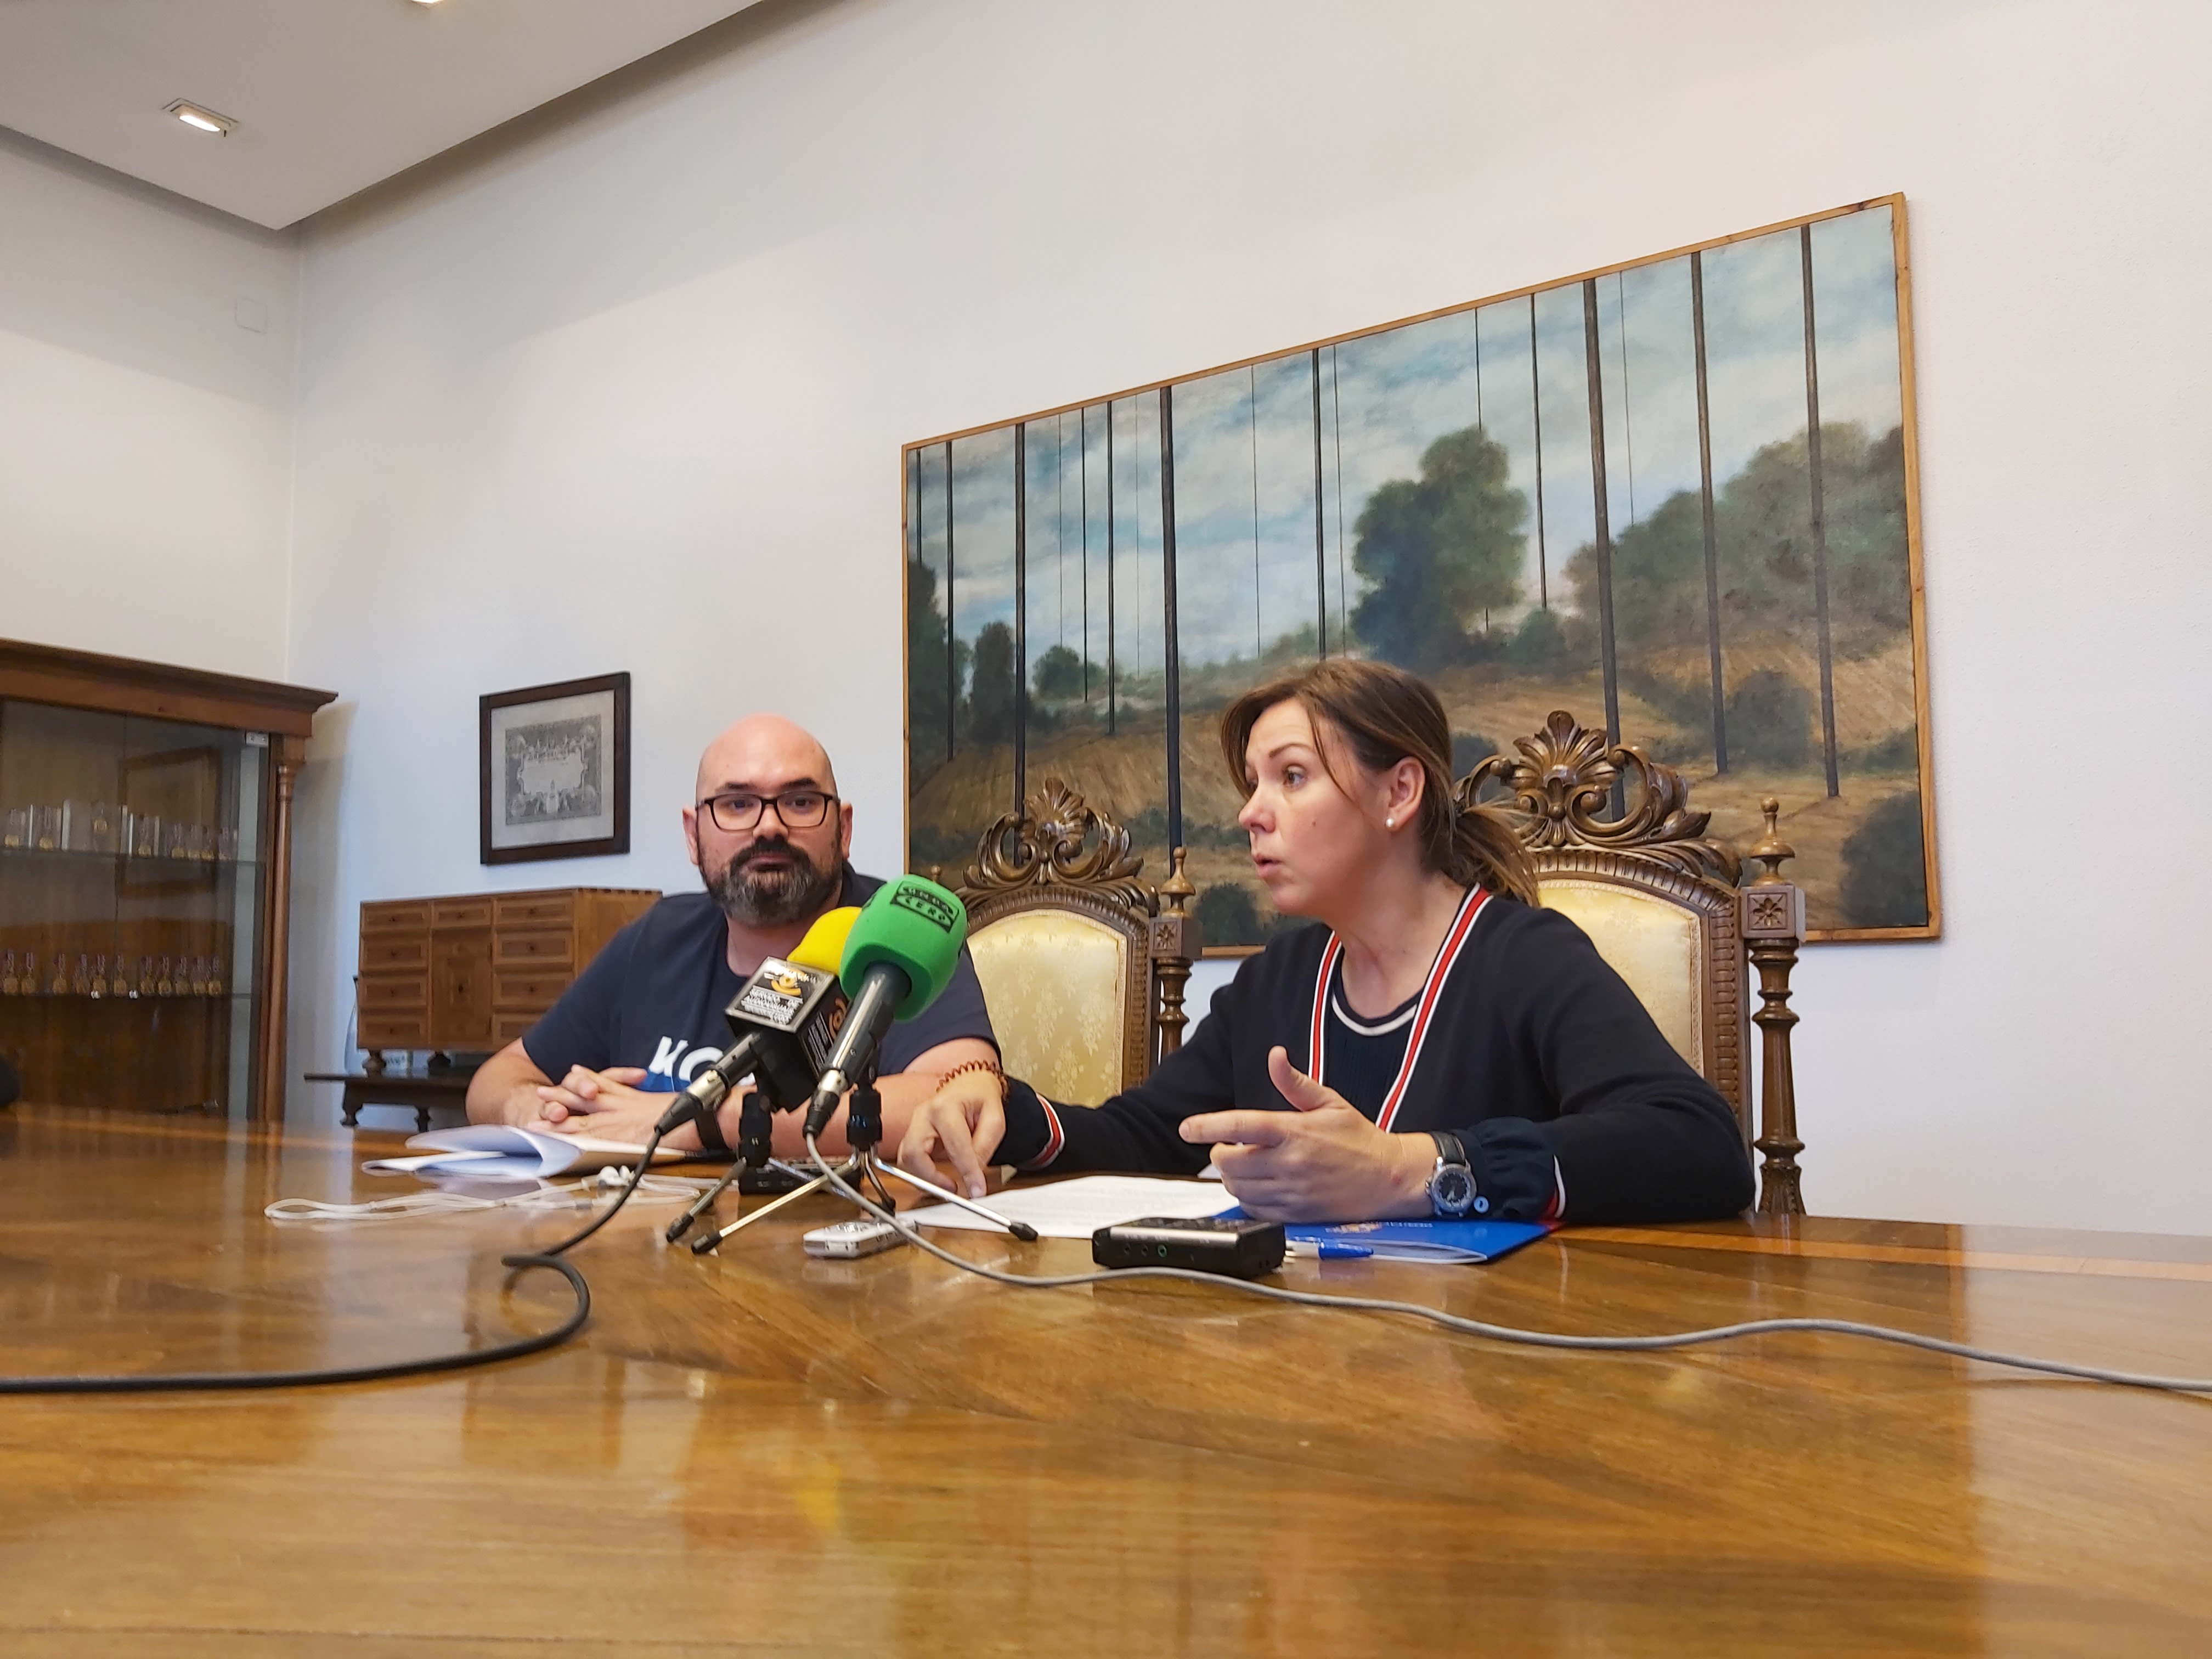 A Deputación de Lugo aumenta un 13% as prazas da teleasistencia domiciliaria, servizo ao que destina 750.000€ ata o 2021